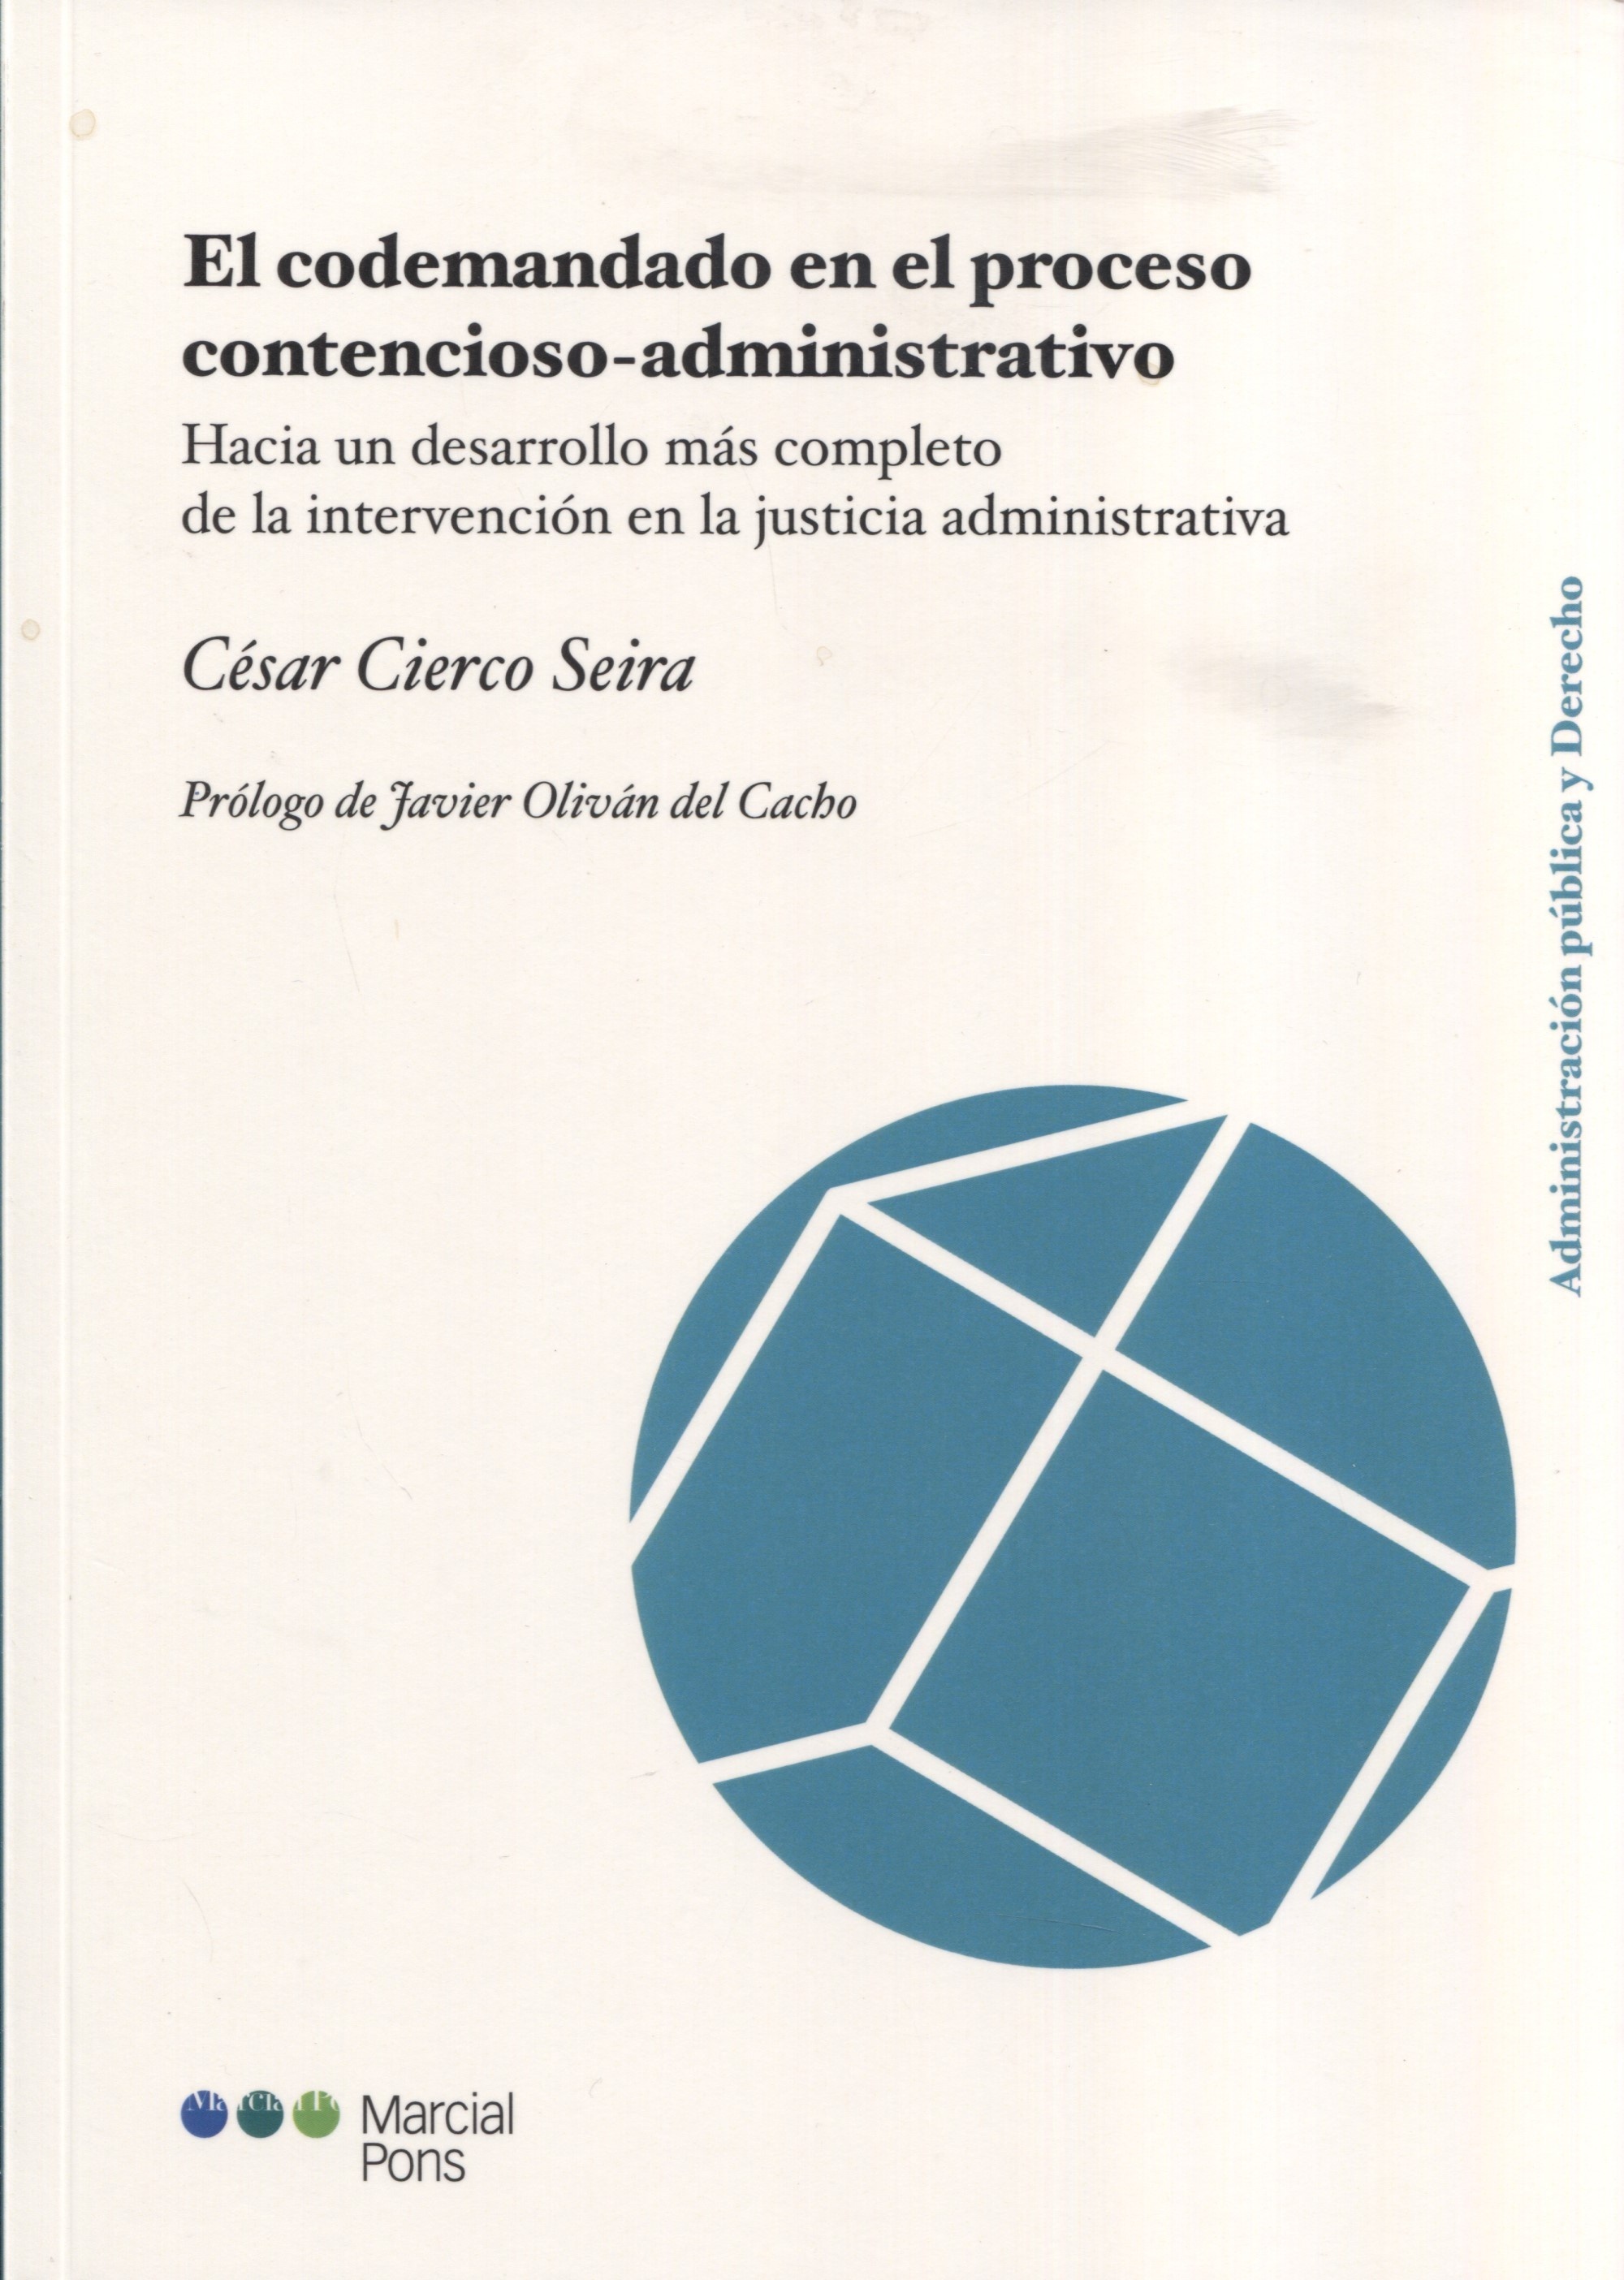 Codemandado en el proceso contencioso-administrativo, El. "Hacia un desarrollo más completo de la intervención en la justicia administrativa"